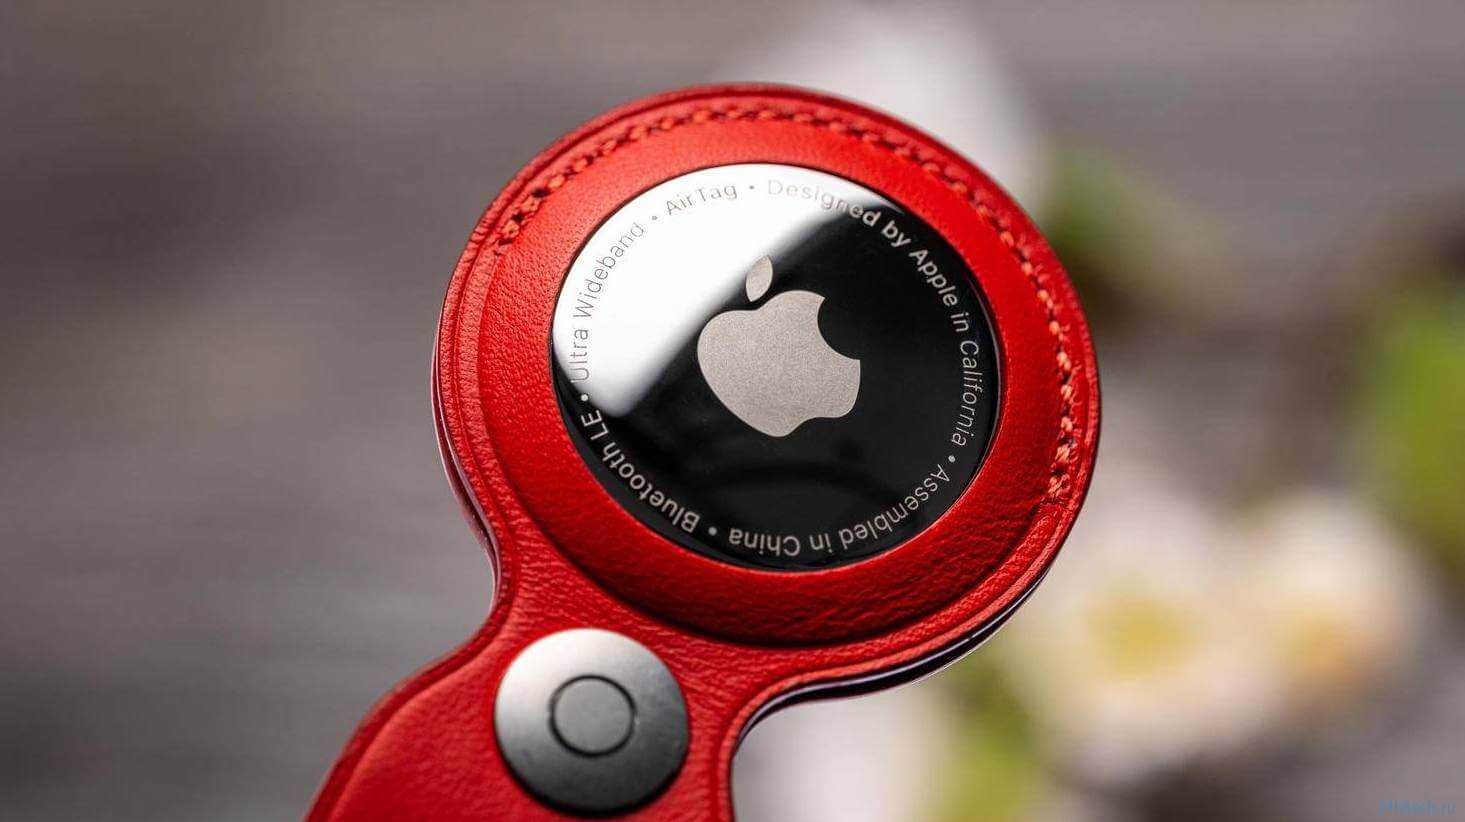 Apple watch и samsung galaxy watch – сравнительный обзор